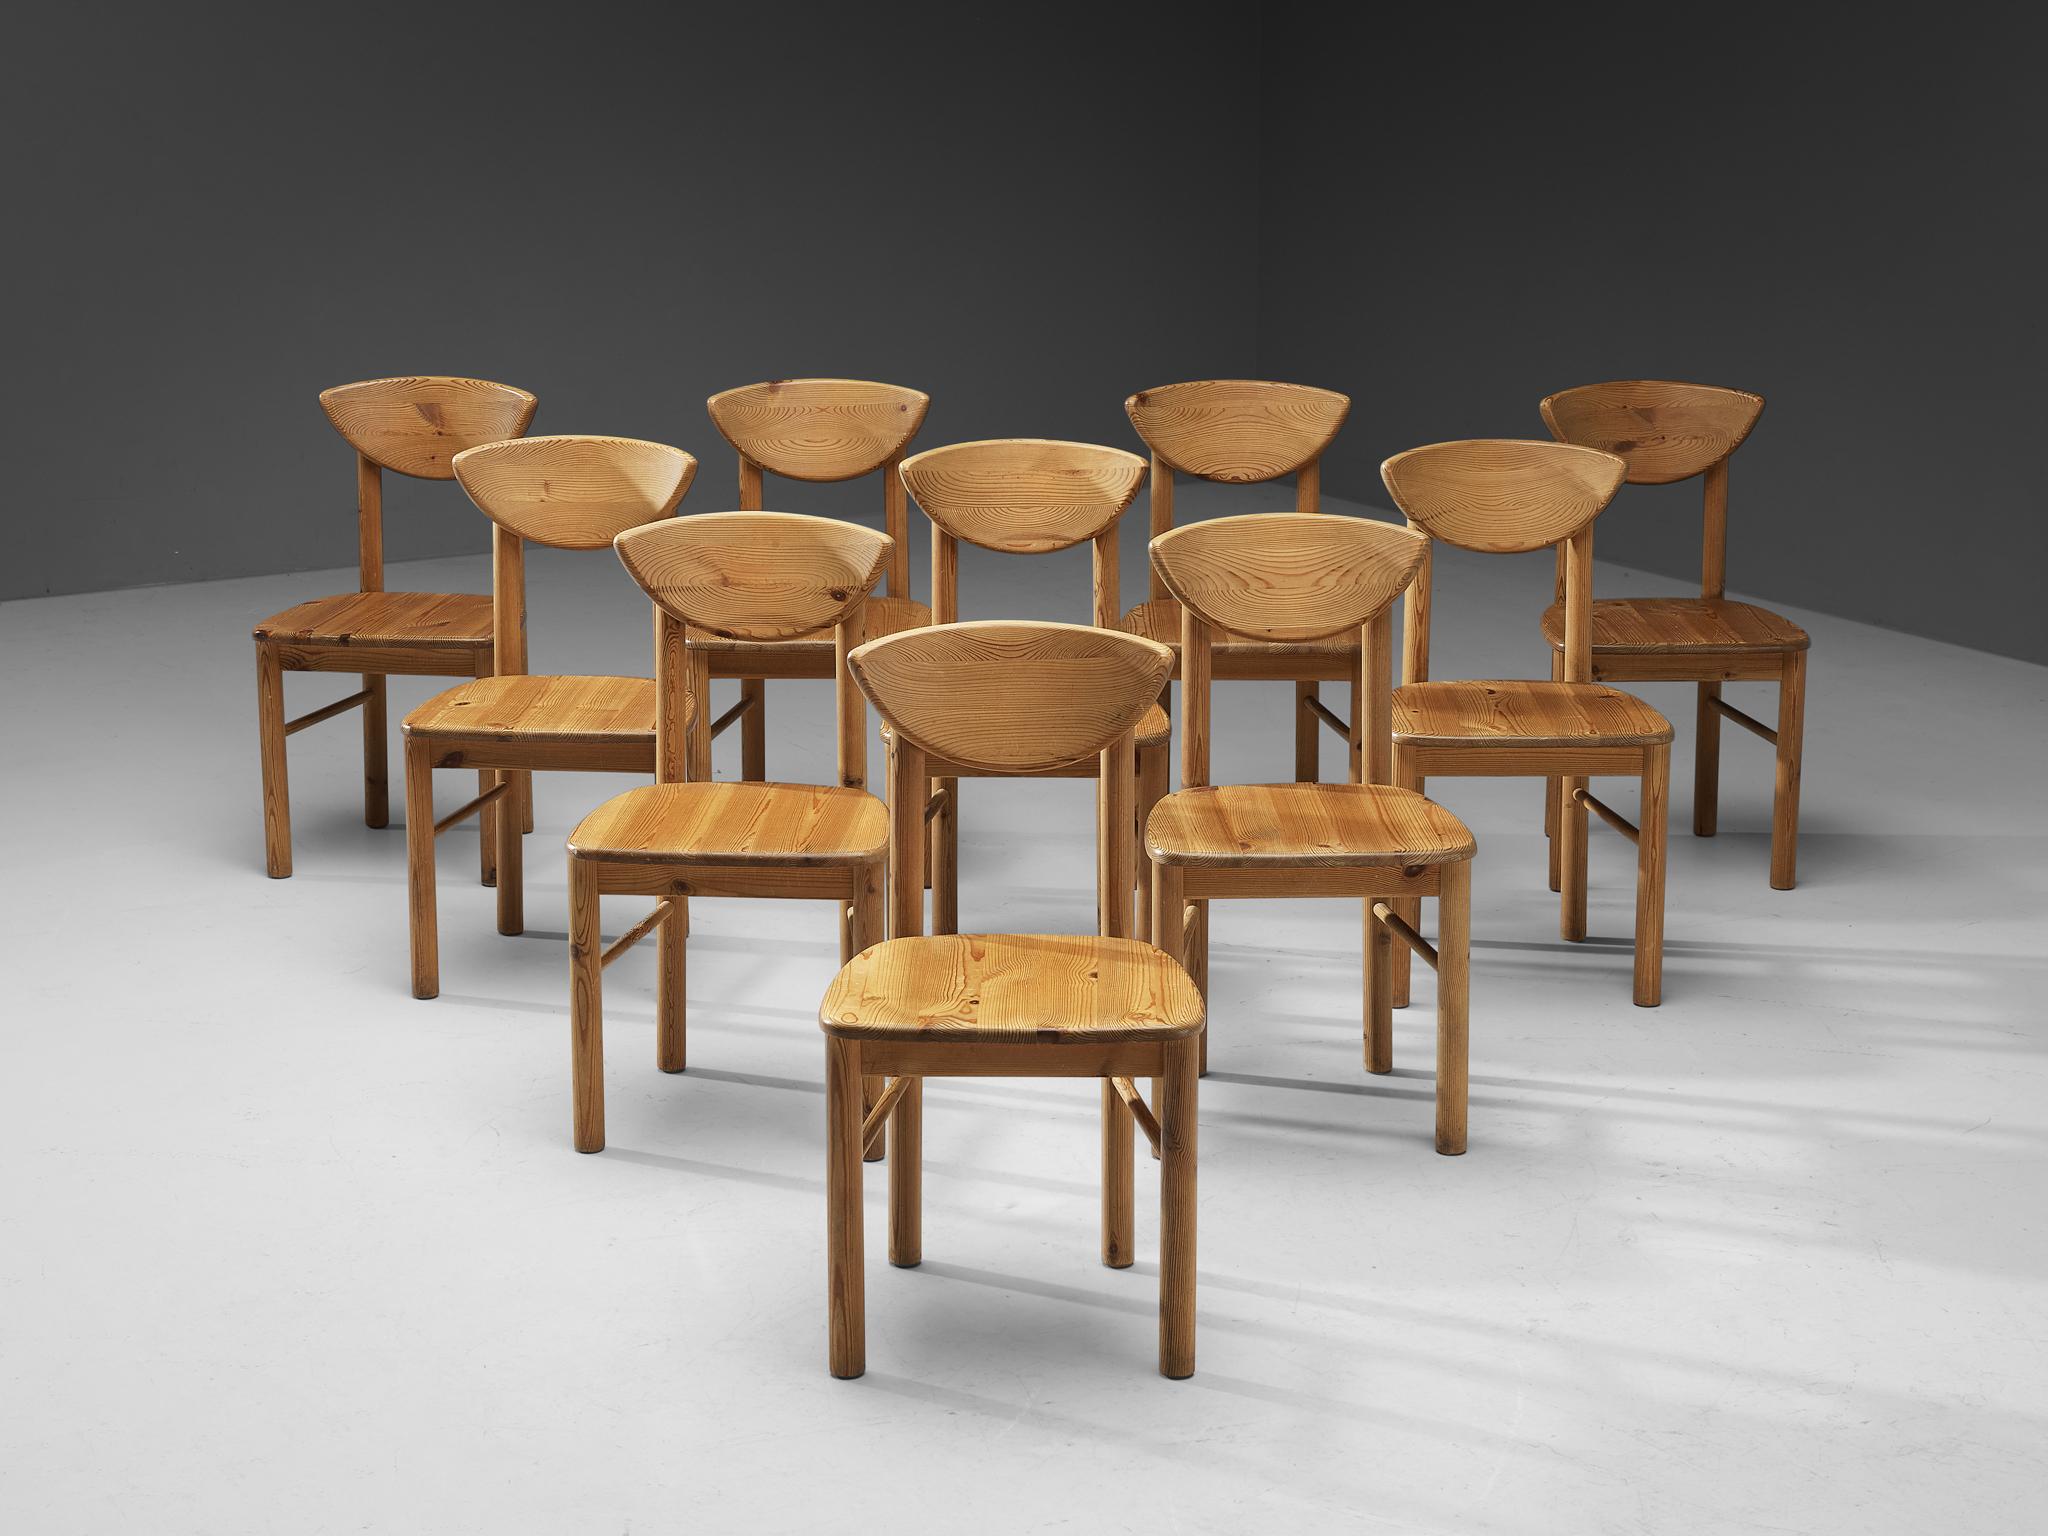 Ensemble de dix chaises de salle à manger, pin, Danemark, années 1970. 

Ensemble de dix belles chaises de salle à manger organiques et naturelles en pin massif. Un design simpliste avec une assise ronde et une attention pour l'expression naturelle